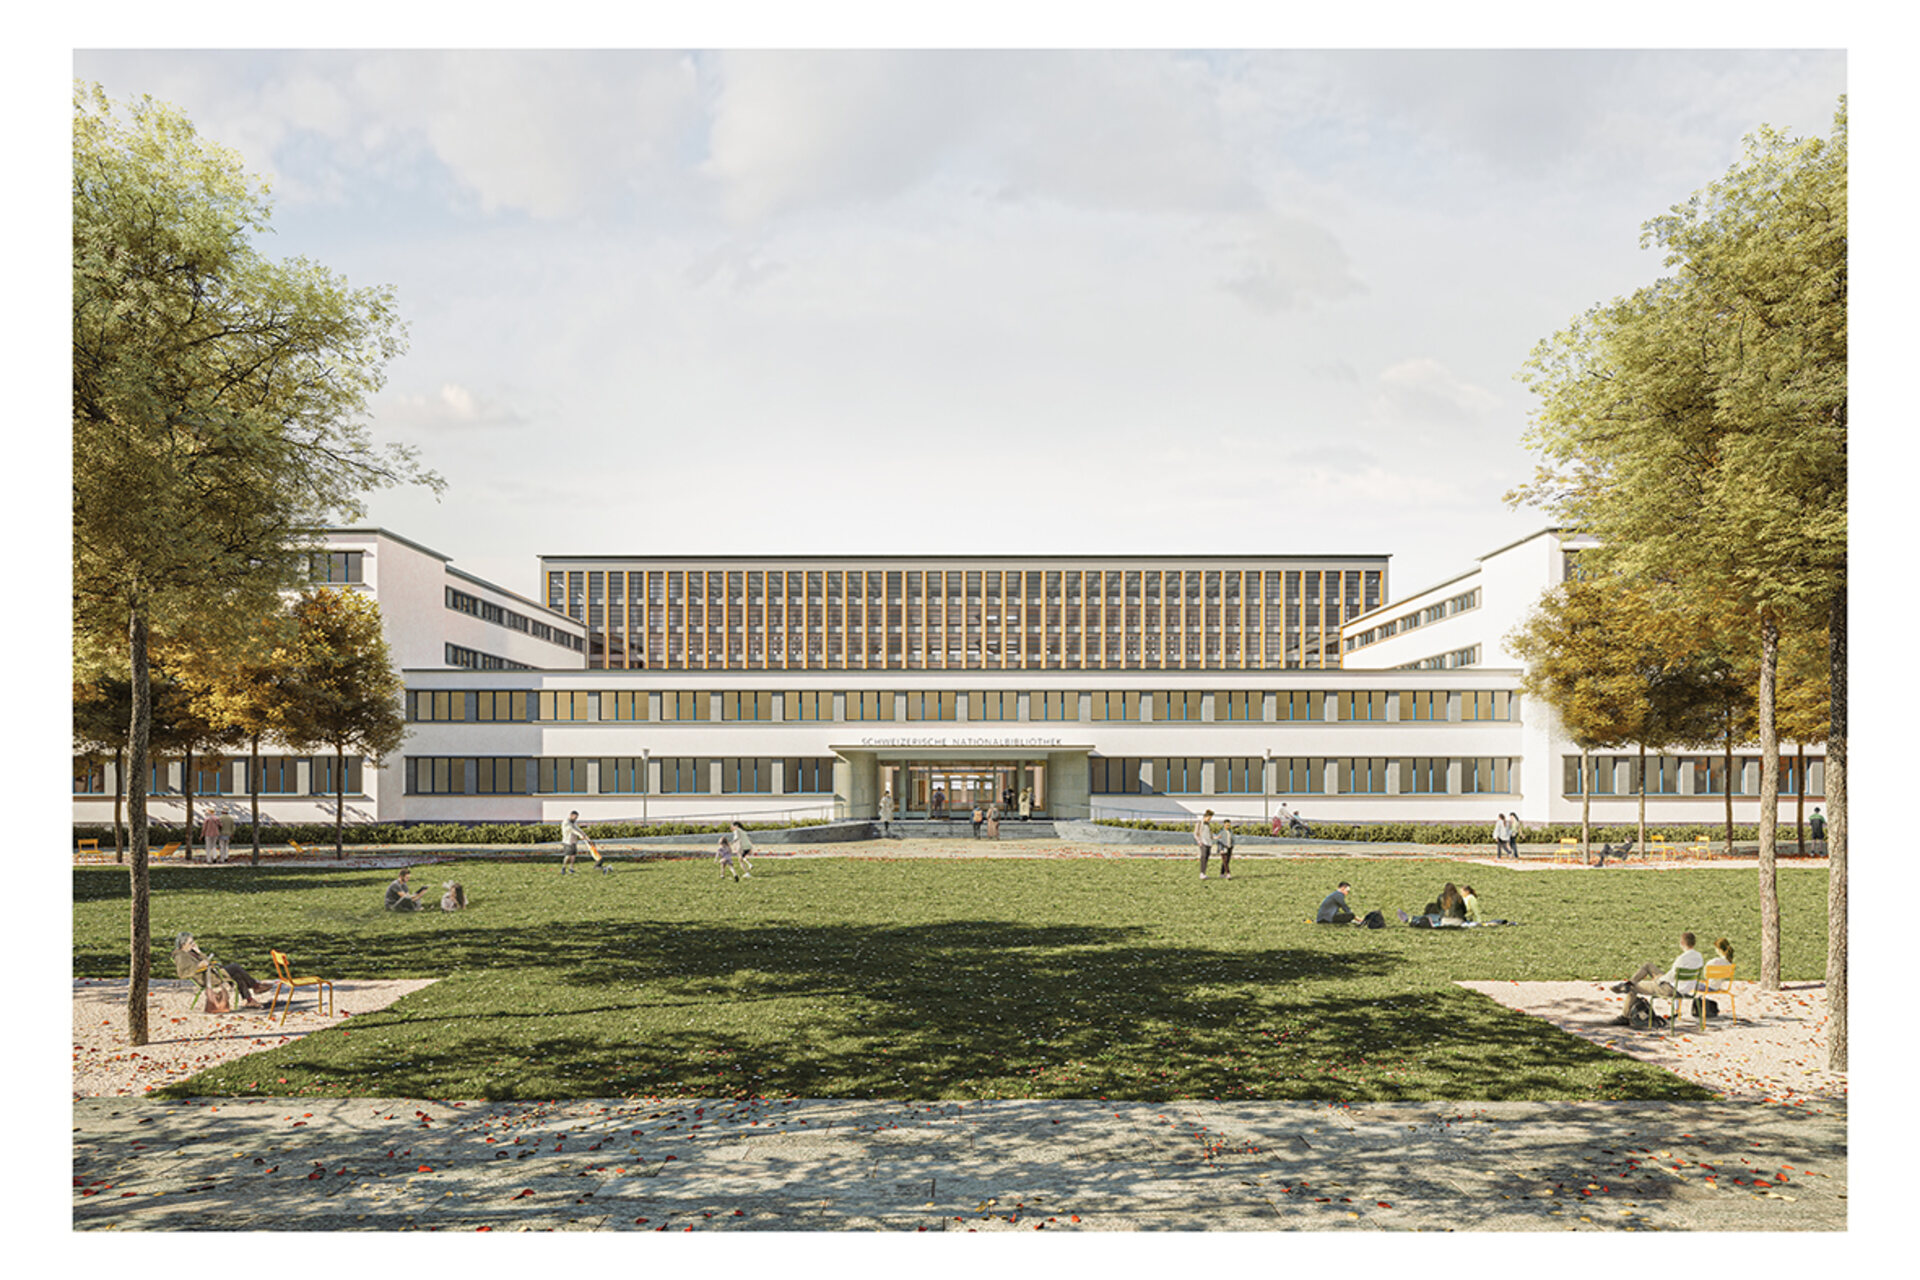 瑞士國家圖書館：由巴塞爾 Christ & Gantenbein 建築公司領導的總體規劃團隊贏得了國家圖書館全面翻修和再開發競賽